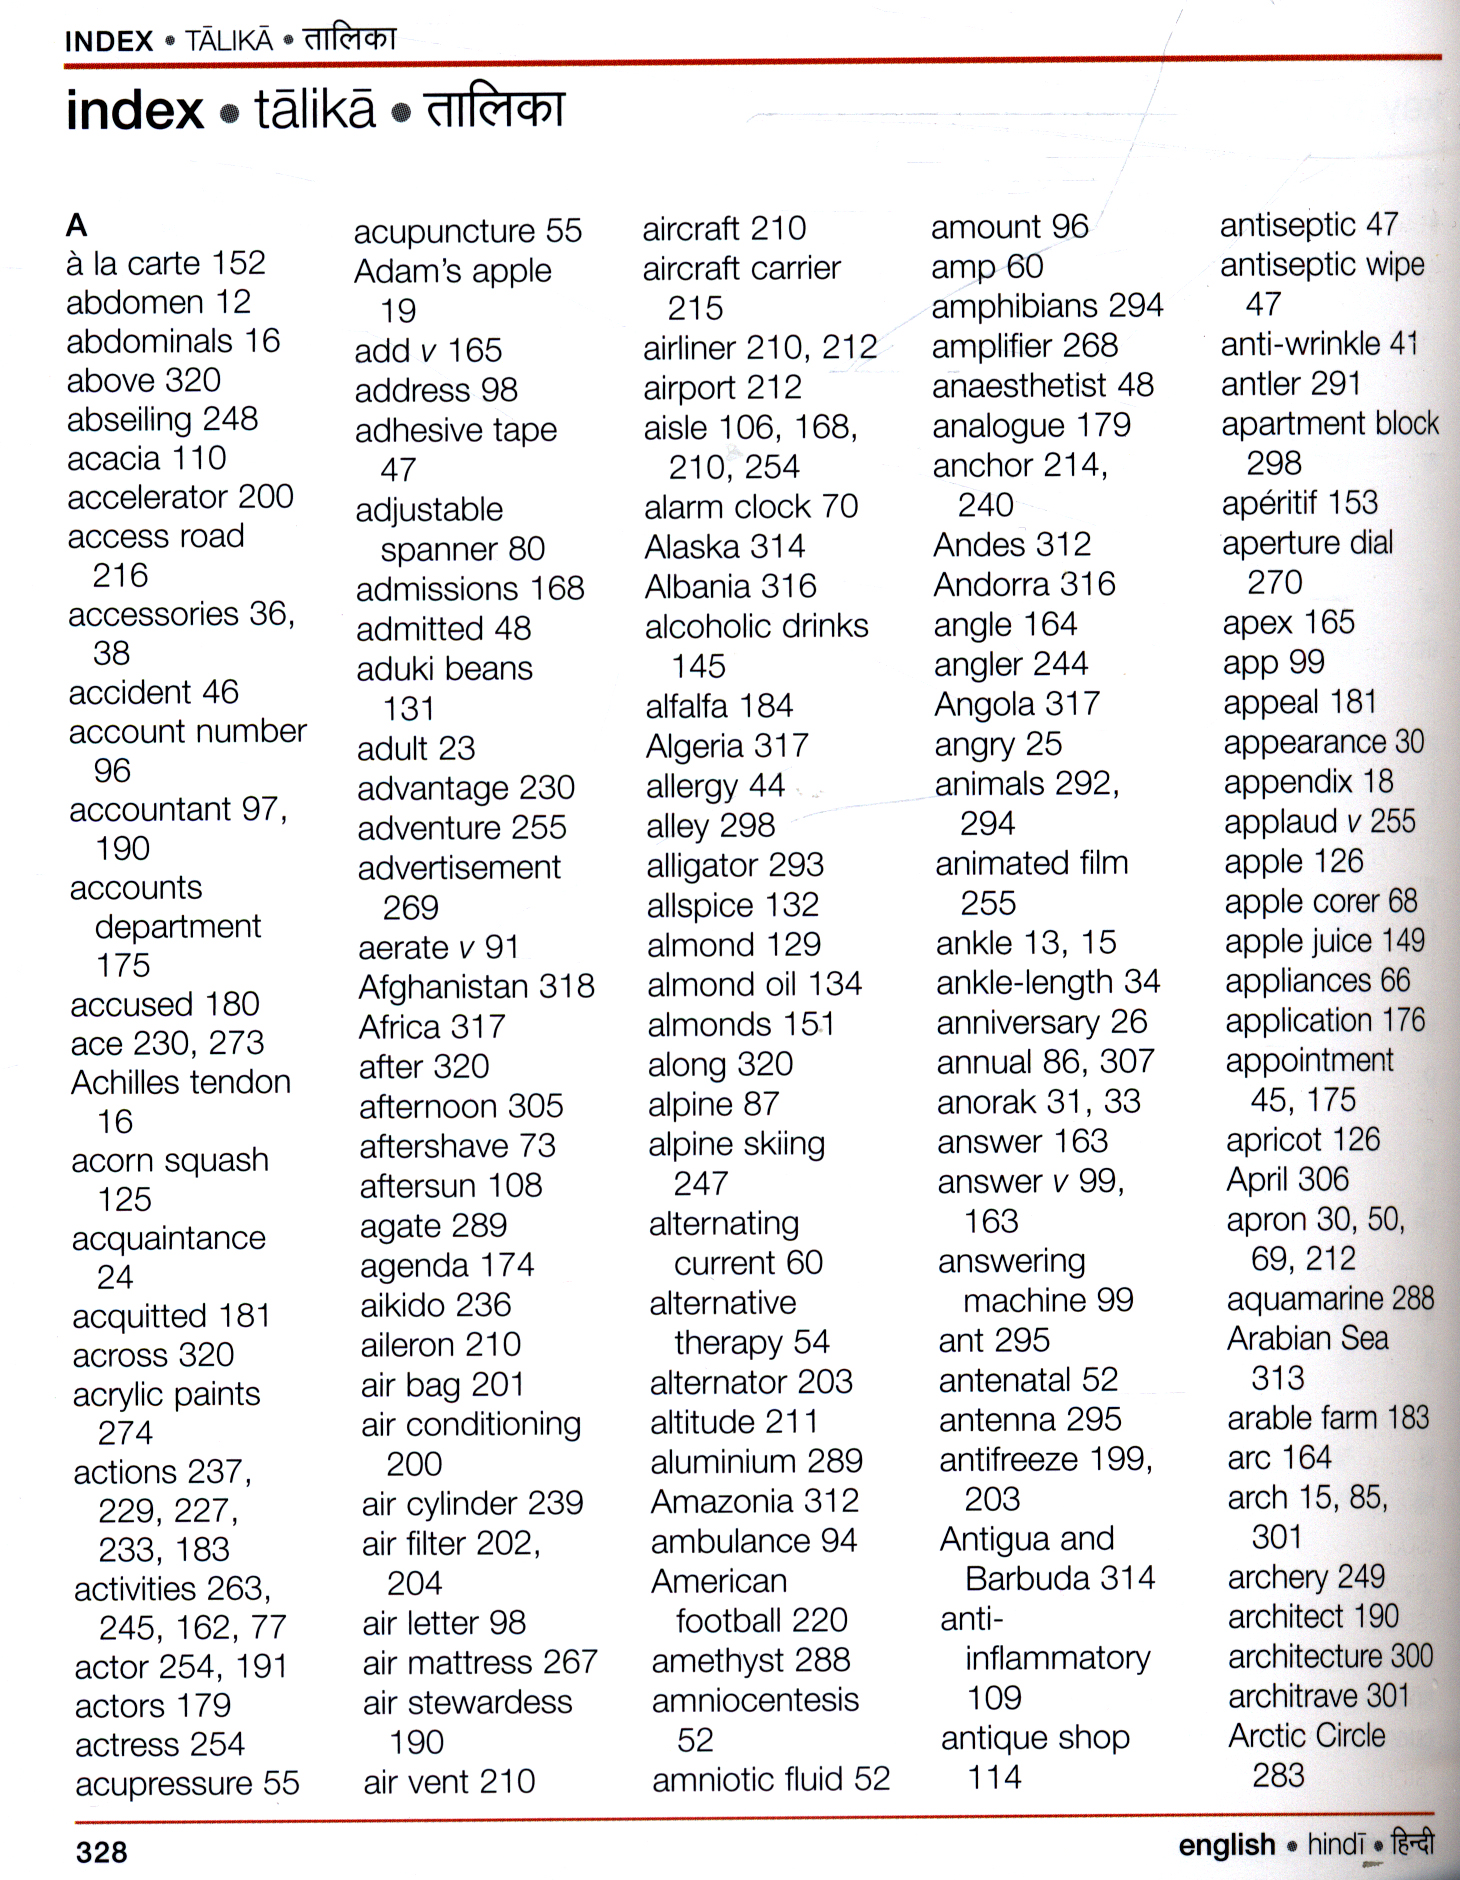 Hindi English Visual Bilingual Dictionary By Dk 9780241199268